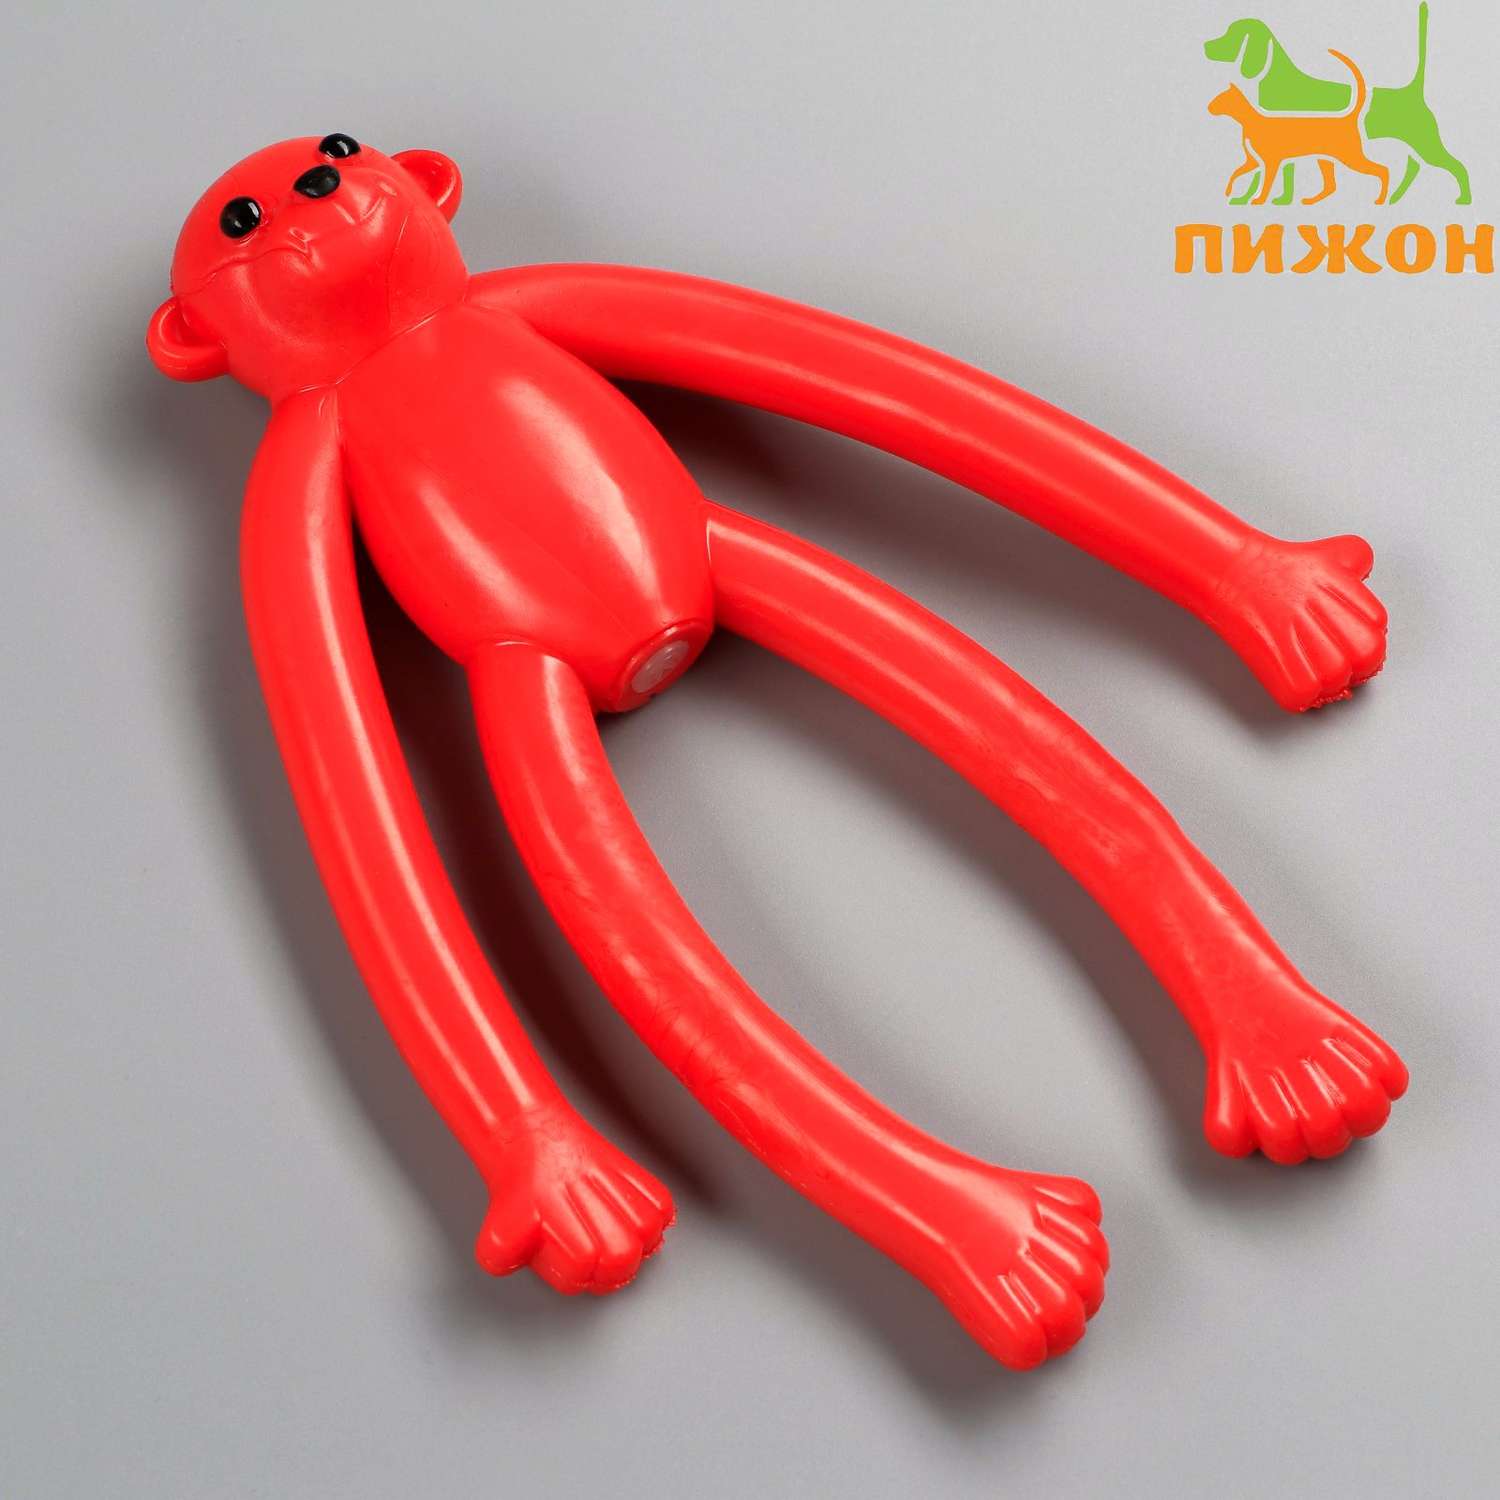 Игрушка Пижон для собак «Обезьяна» с пищалкой 19.5 см силикон красная - фото 1